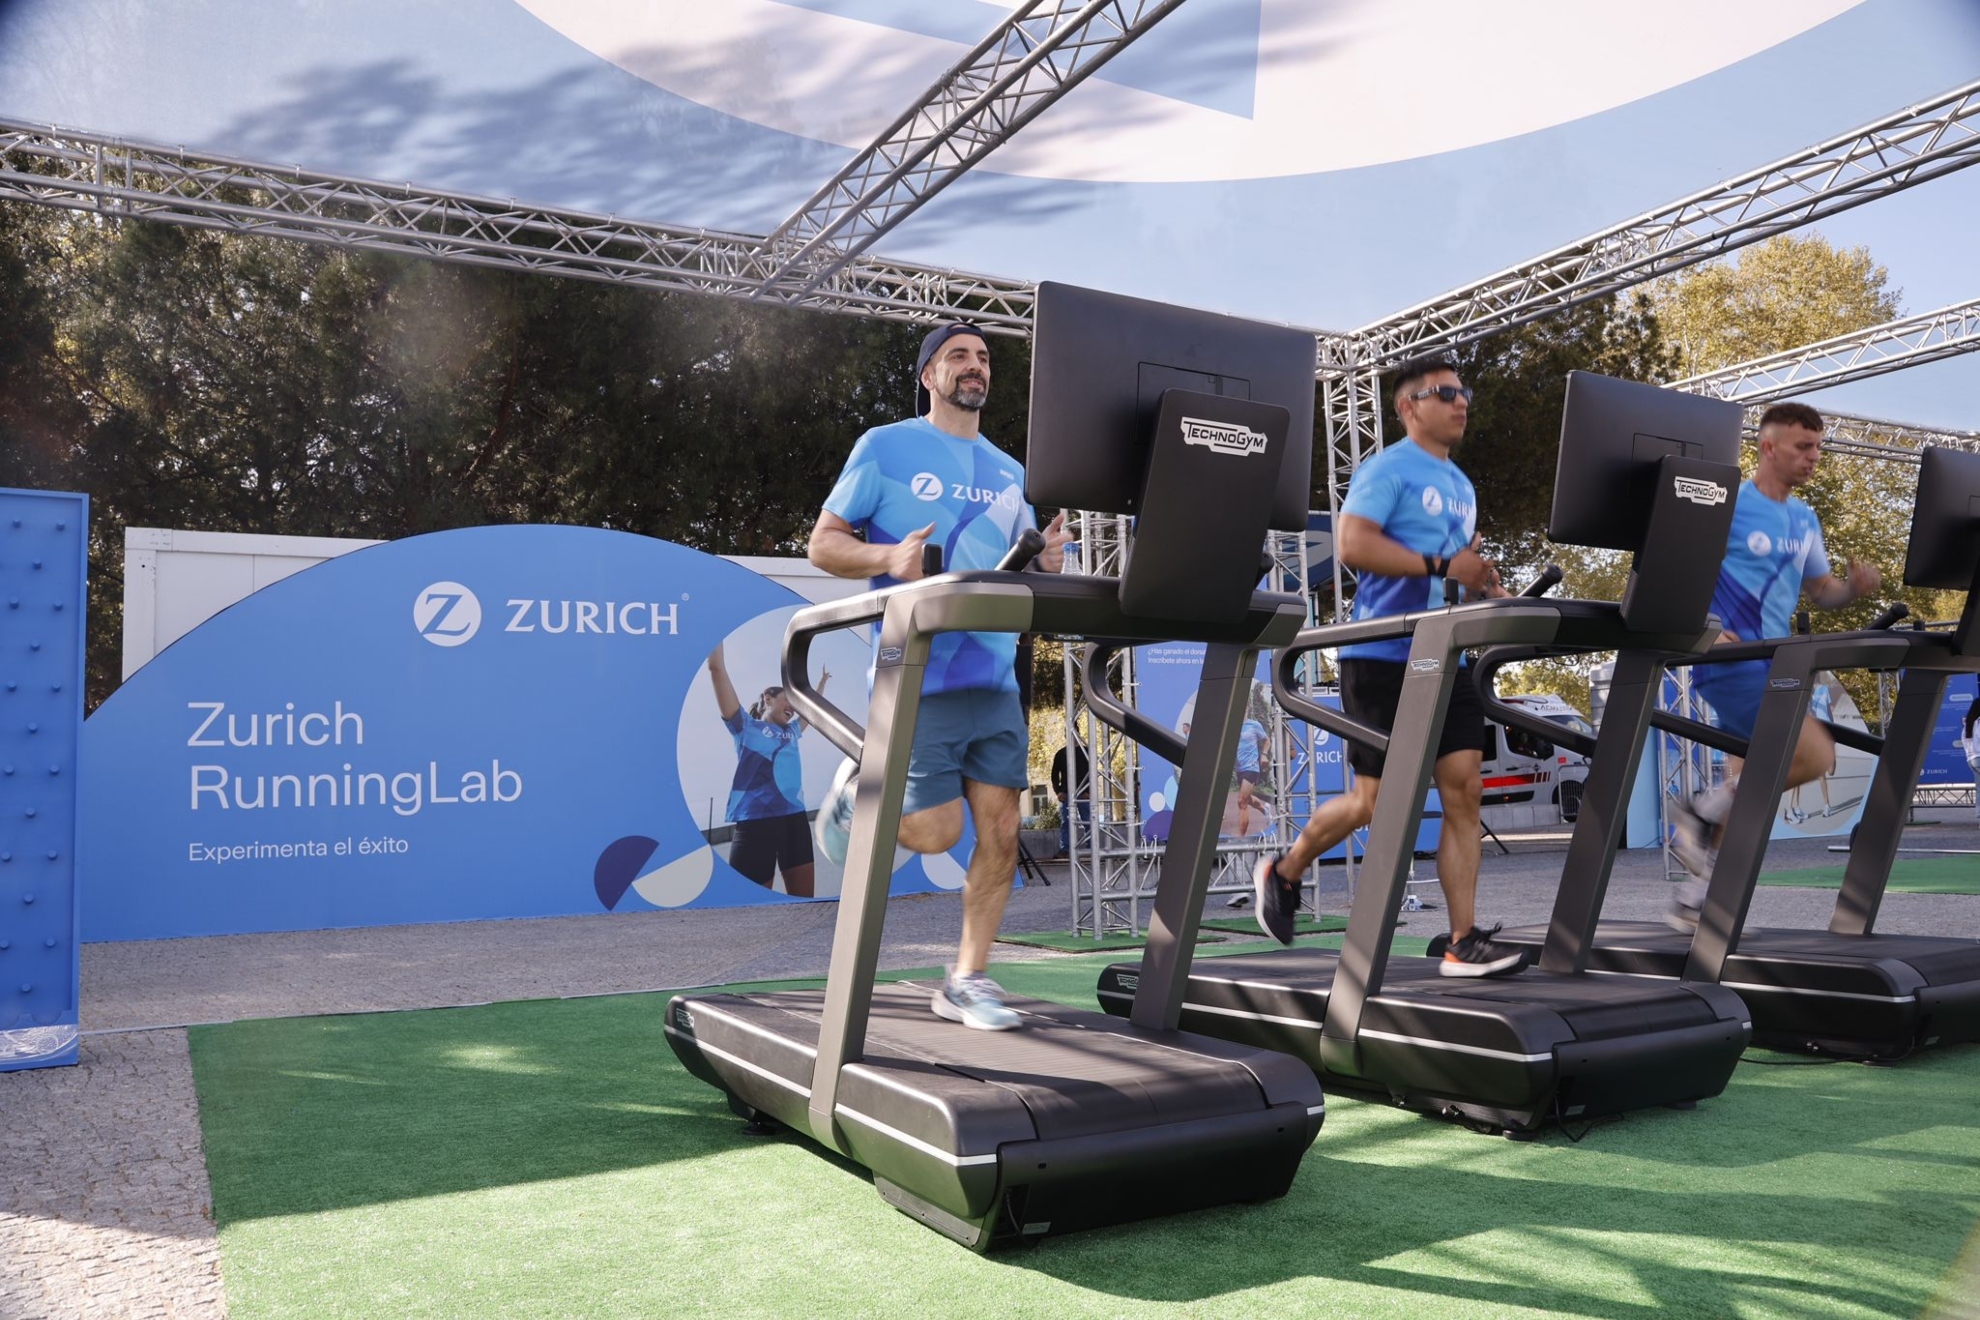 Nace Zurich RunningLab, el nuevo espacio de experiencias para runners en Madrid